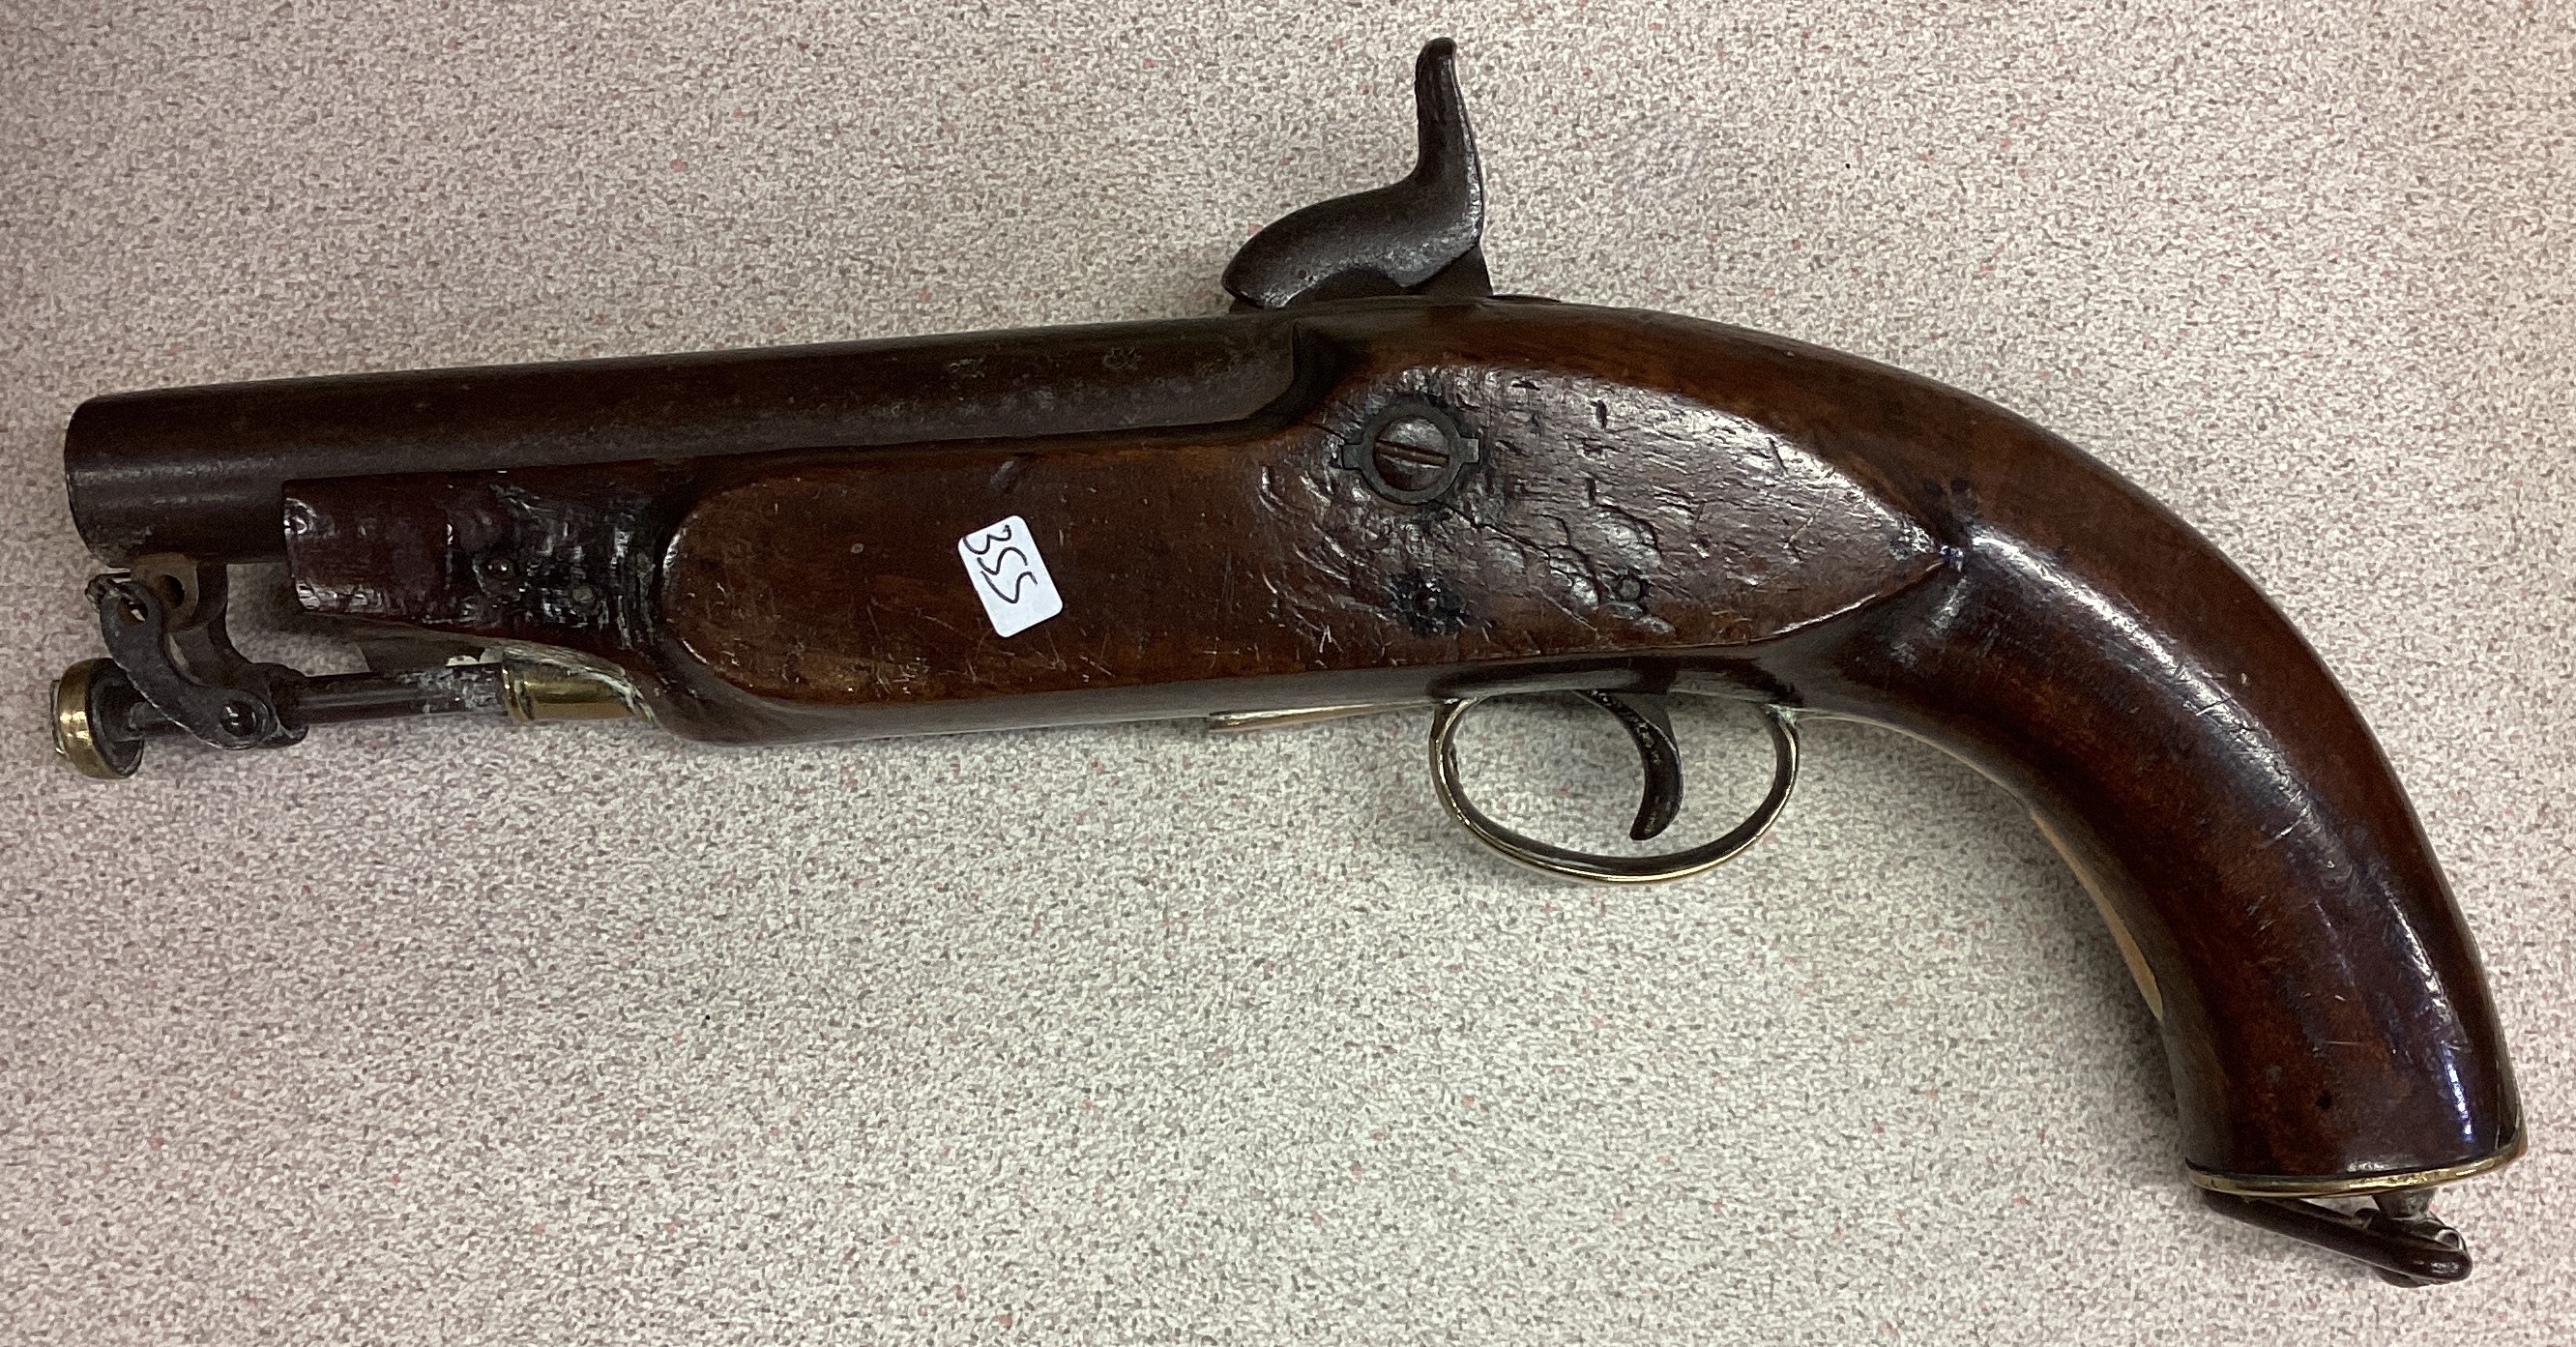 An old oak and brass mounted flintlock pistol.